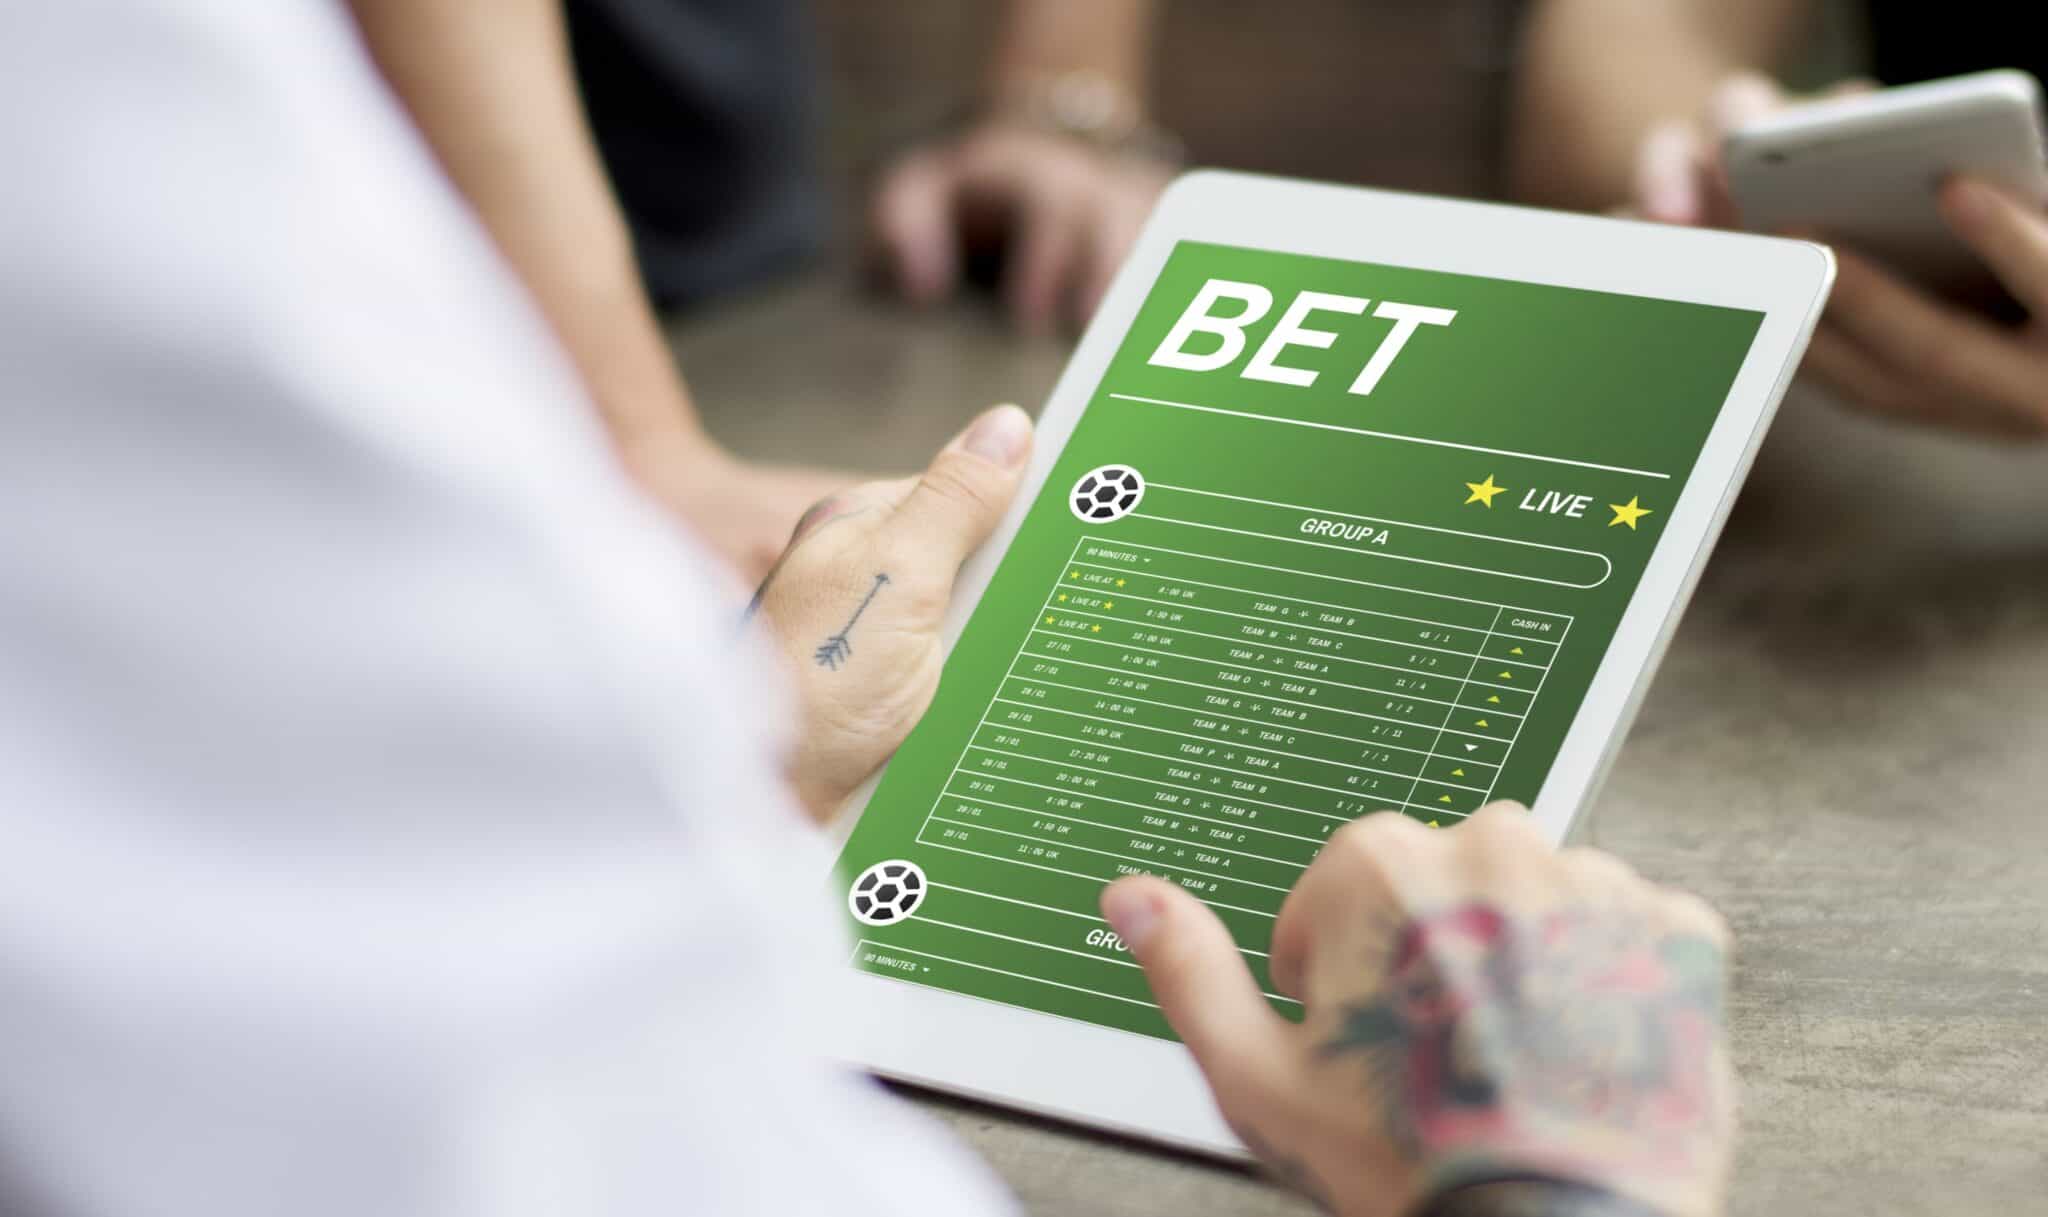 Imagem de um homem de costas segurando um tablet aberto em um site com informação de odds em apostas esportivas, exemplificando o que é e como funciona